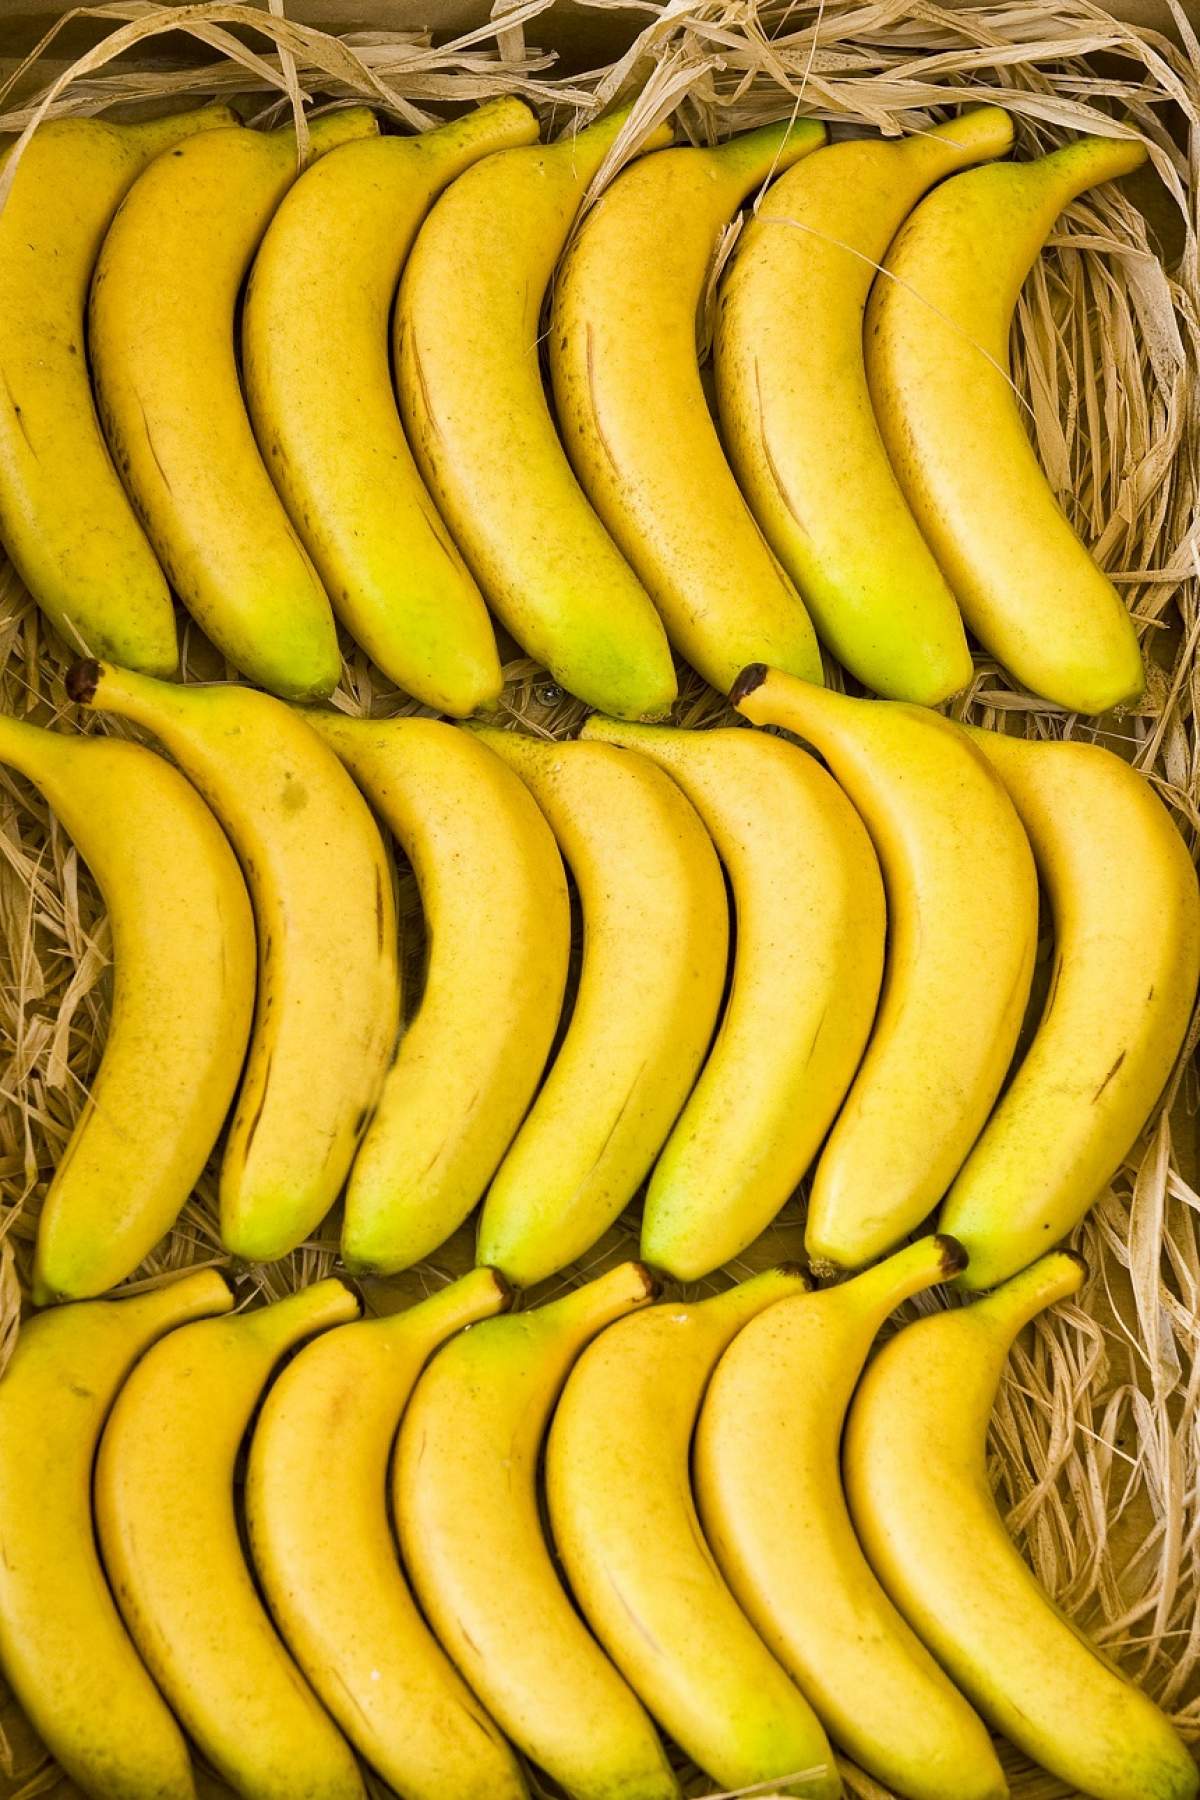 FOTO / Bananele, alimente miraculoase cu proprietăţi curatoare